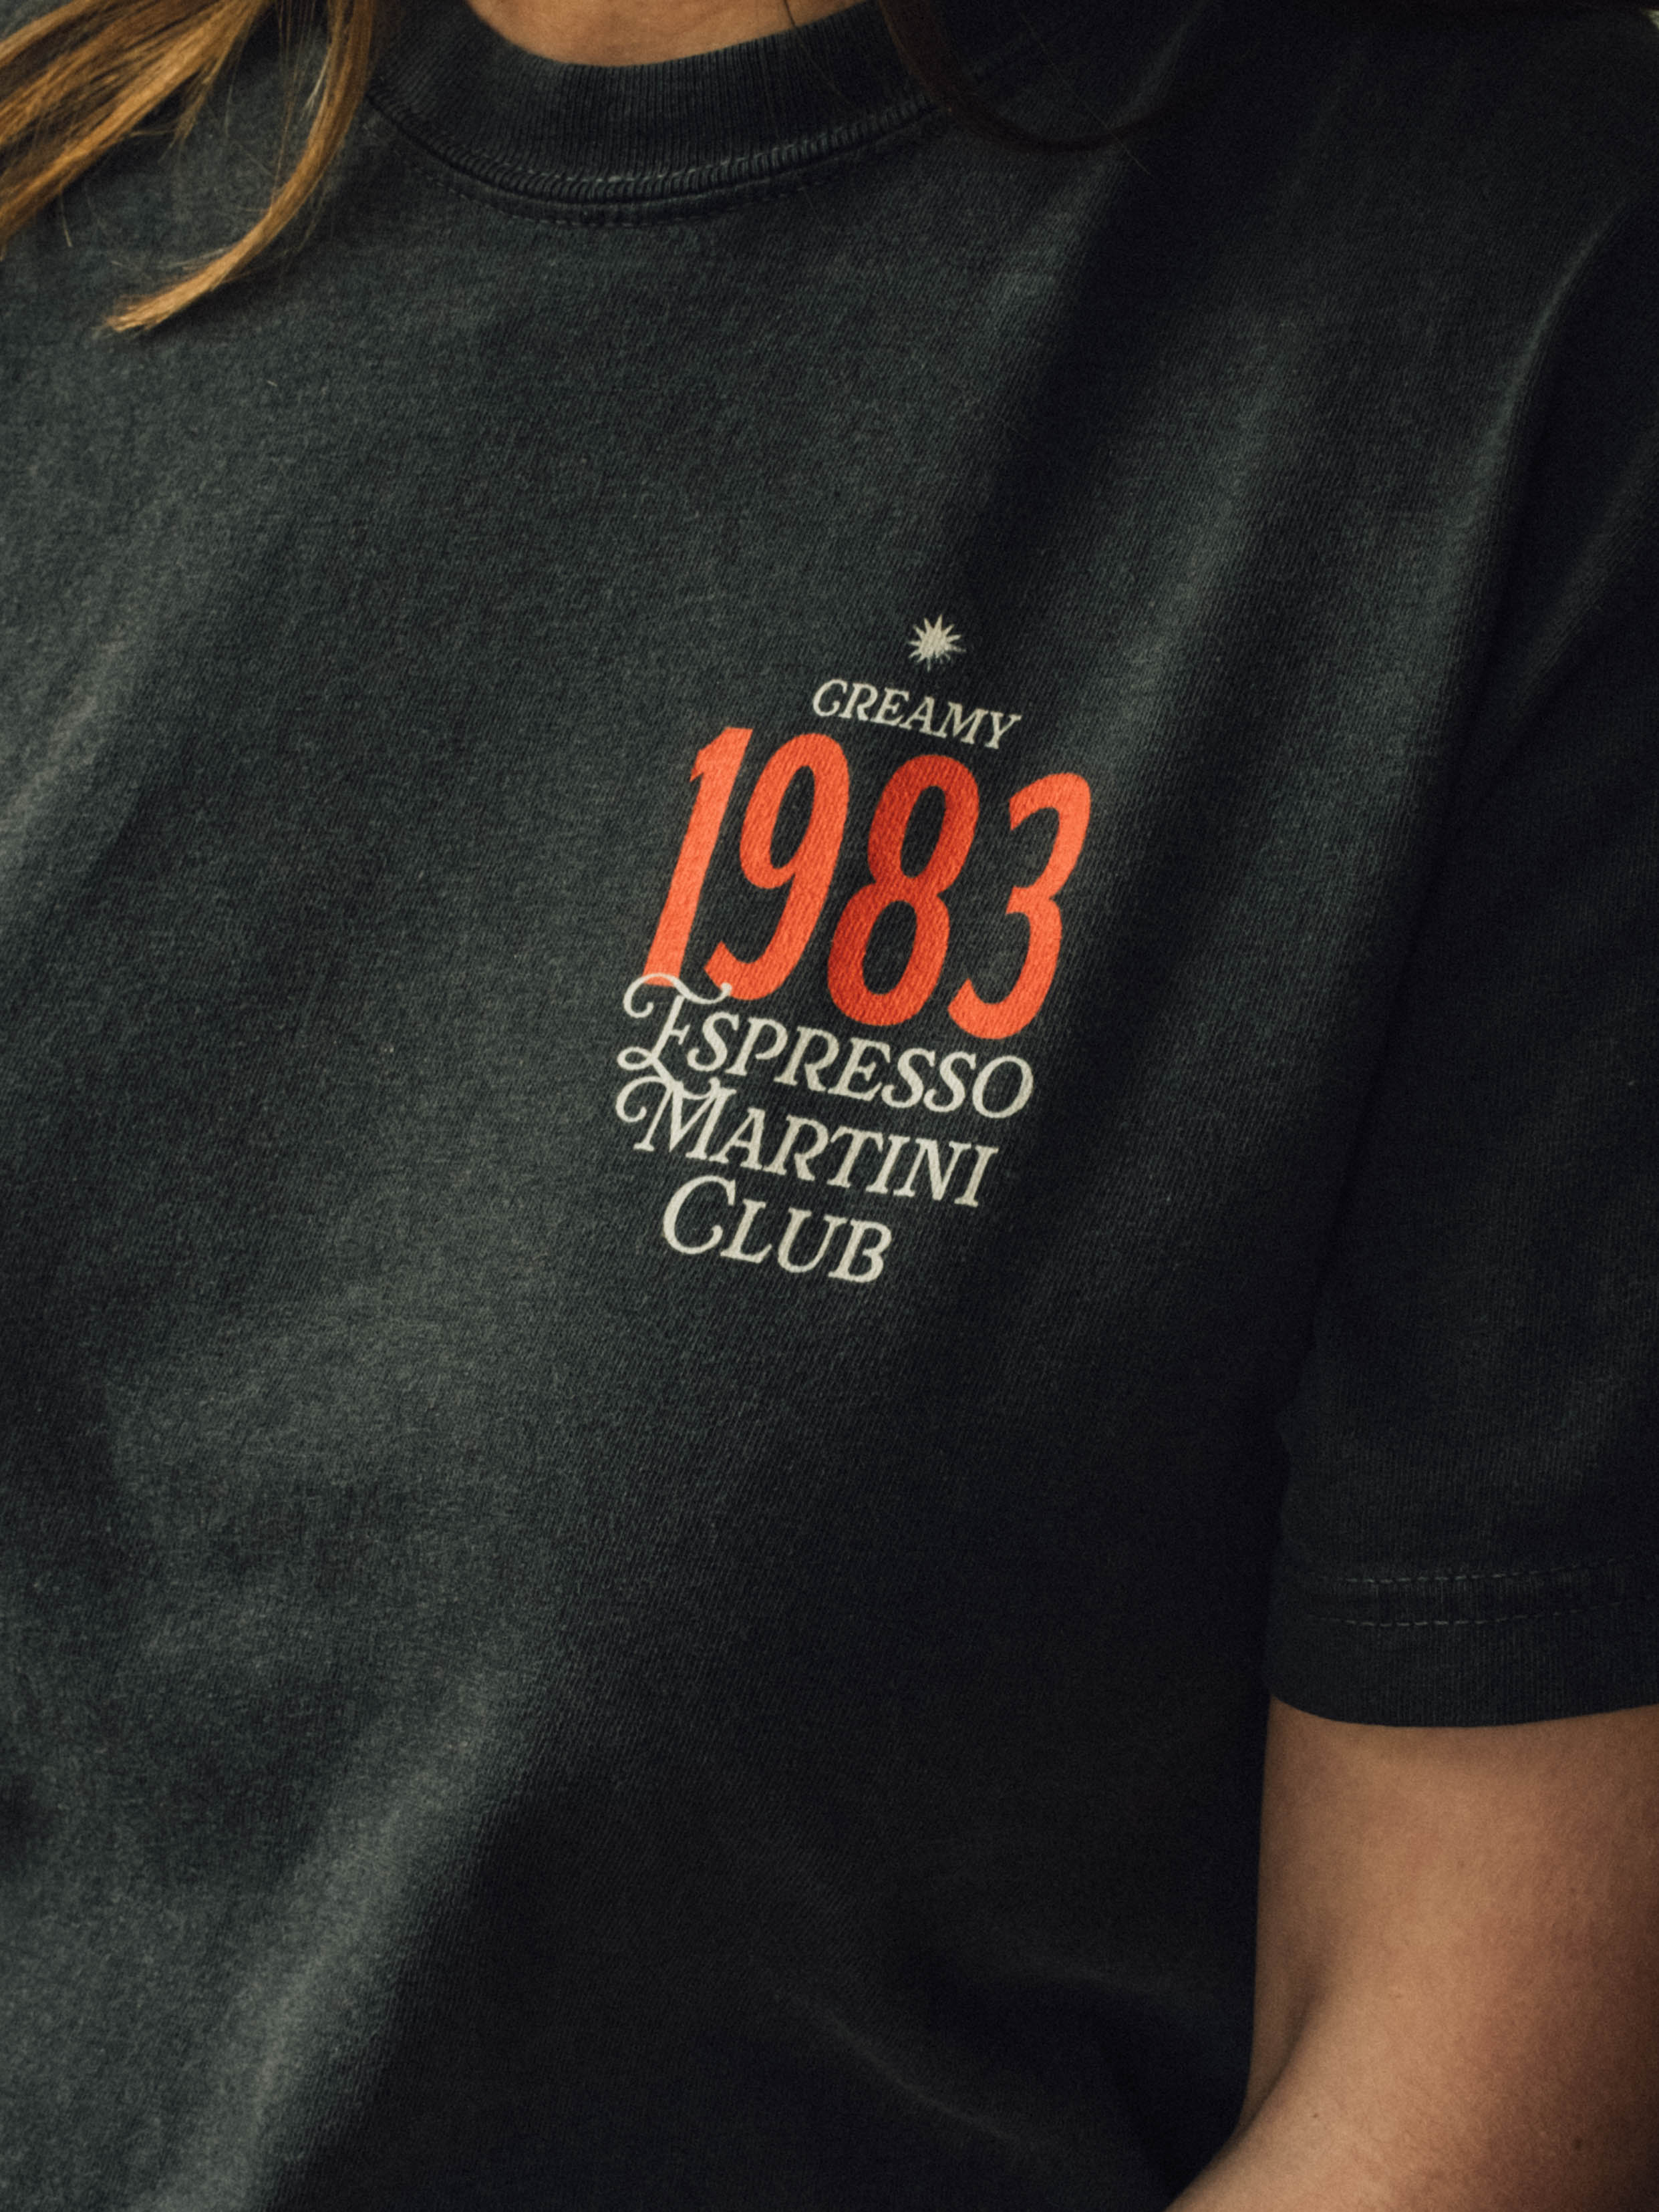 1983 Espresso Martini Club Tee